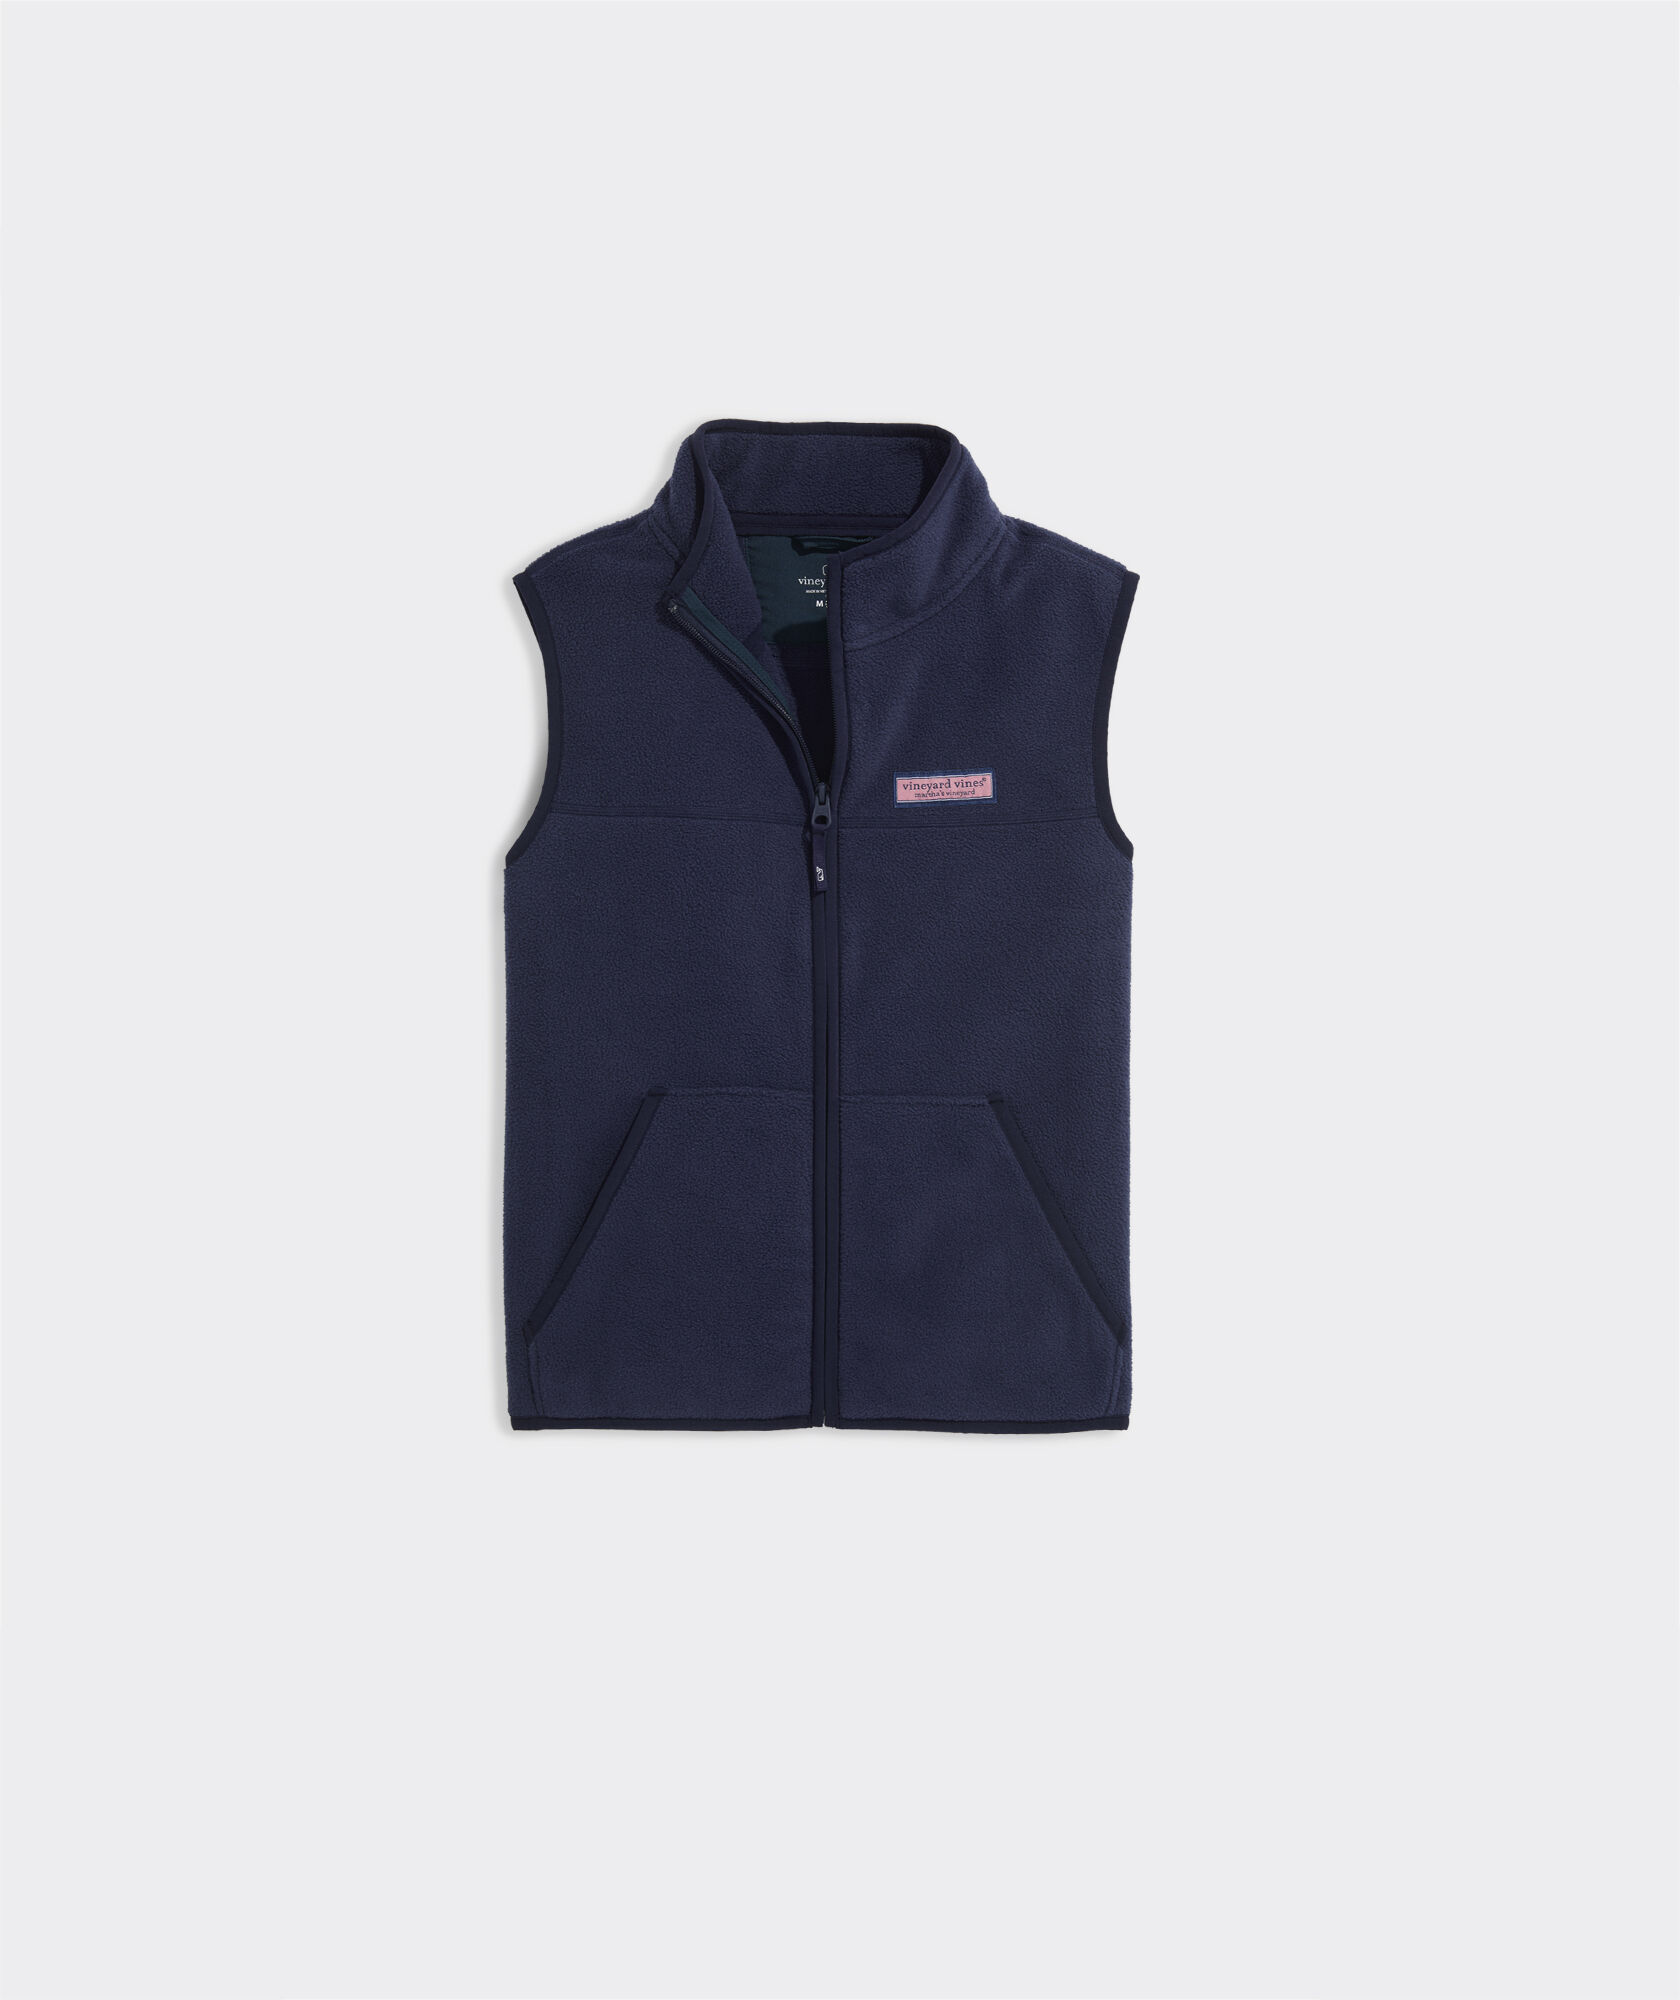 Boys' Harbor Fleece Full-Zip Vest